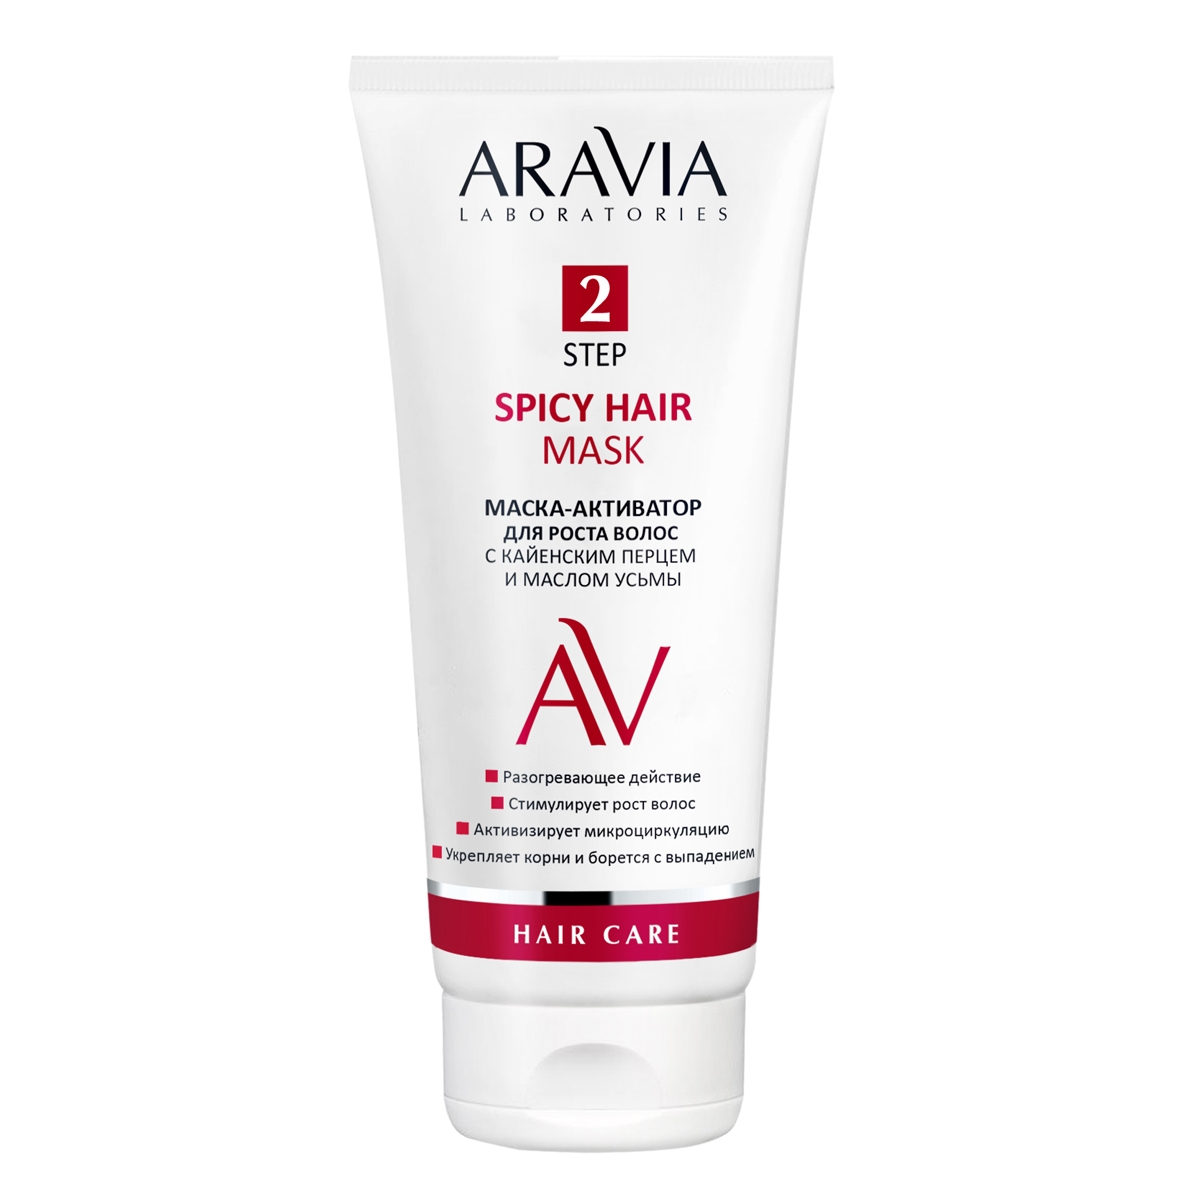 Aravia Laboratories Маска-активатор для роста волос с кайенским перцем и малом усьмы Spicy Hair Mask, 200 мл (Aravia Laboratories, Уход за волосами)